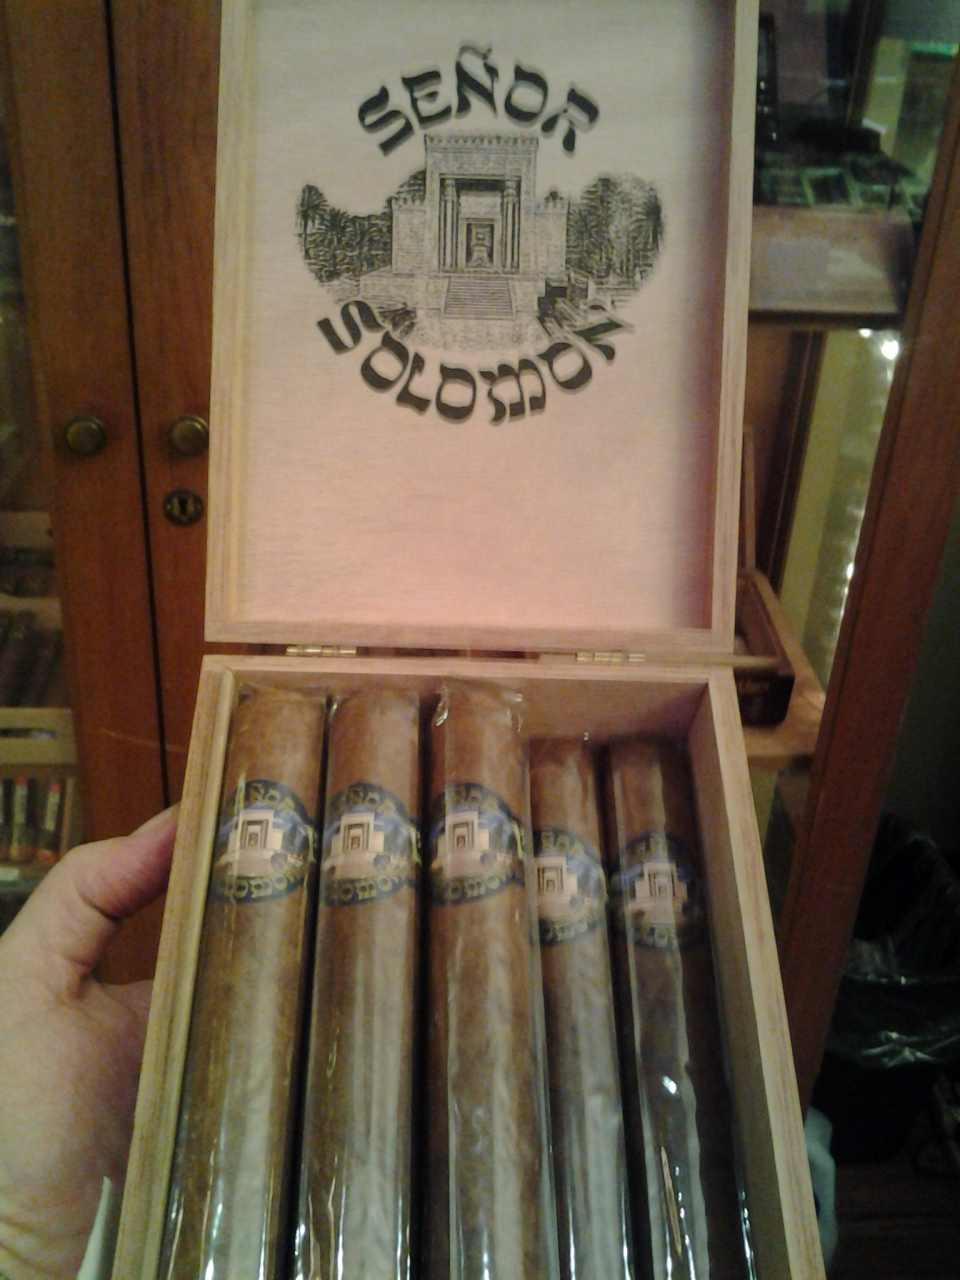 Shlomo and Israel's fave Kosher cigar